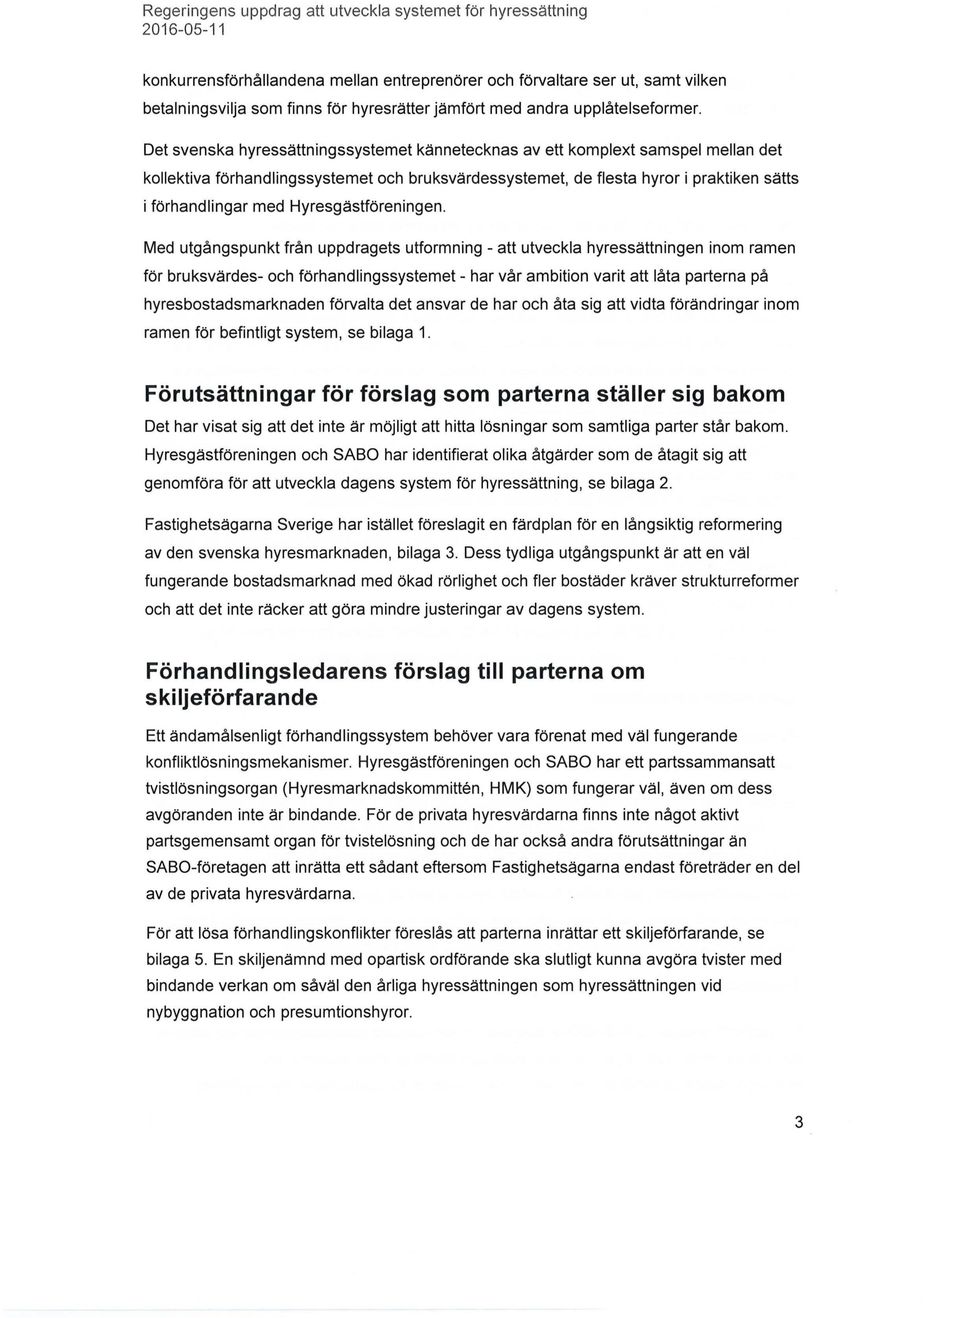 Det svenska hyressättningssystemet kännetecknas av ett komplext samspel mellan det kollektiva förhandlingssystemet och bruksvärdessystemet, de flesta hyror i praktiken sätts i förhandlingar med